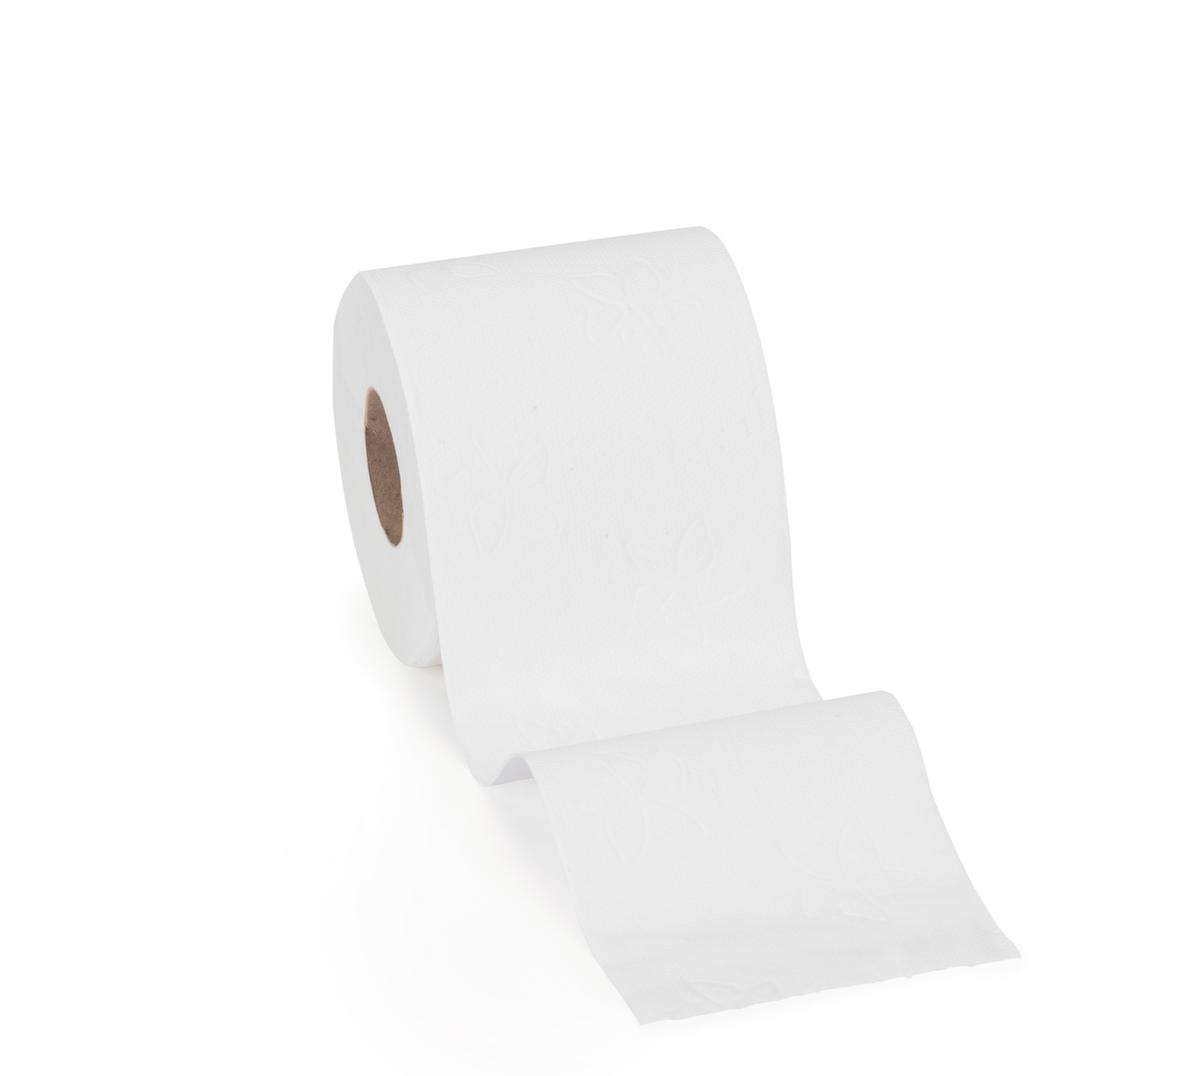 Tork papier toilette Advanced pour lieux peu fréquentés  ZOOM